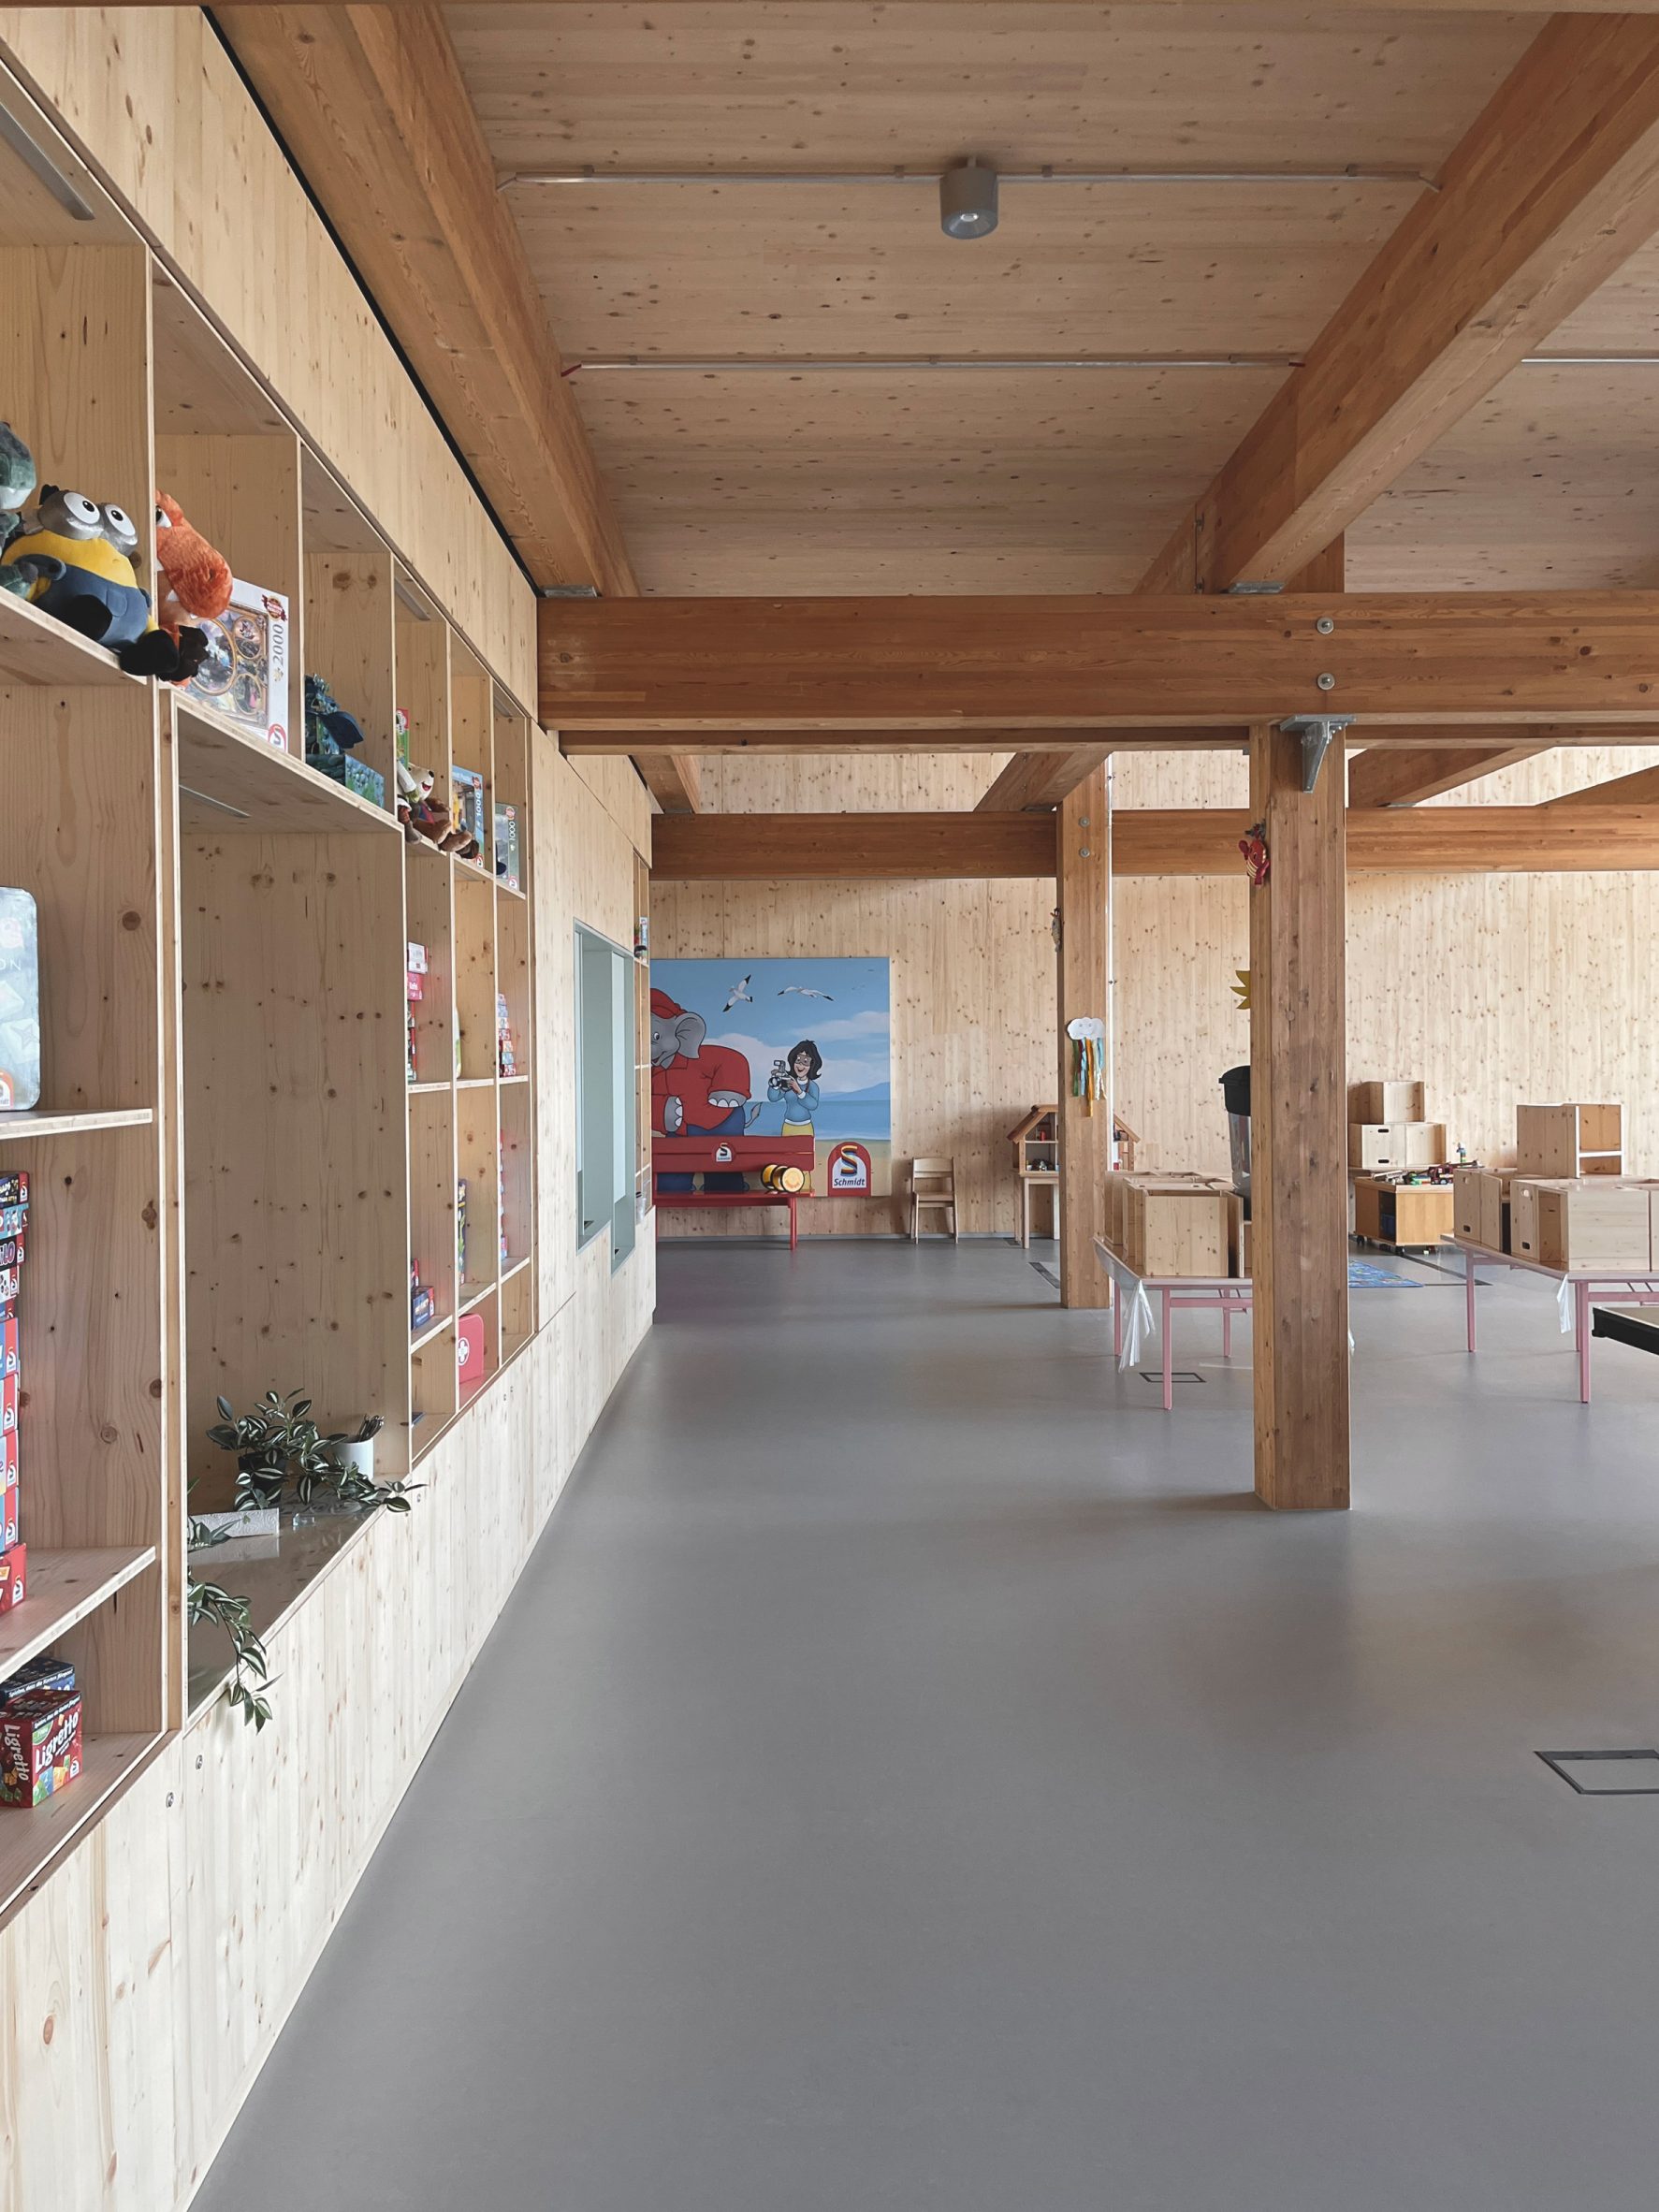 Interior of Erlebnis-Hus visitor centre by Holzer Kobler Architekturen